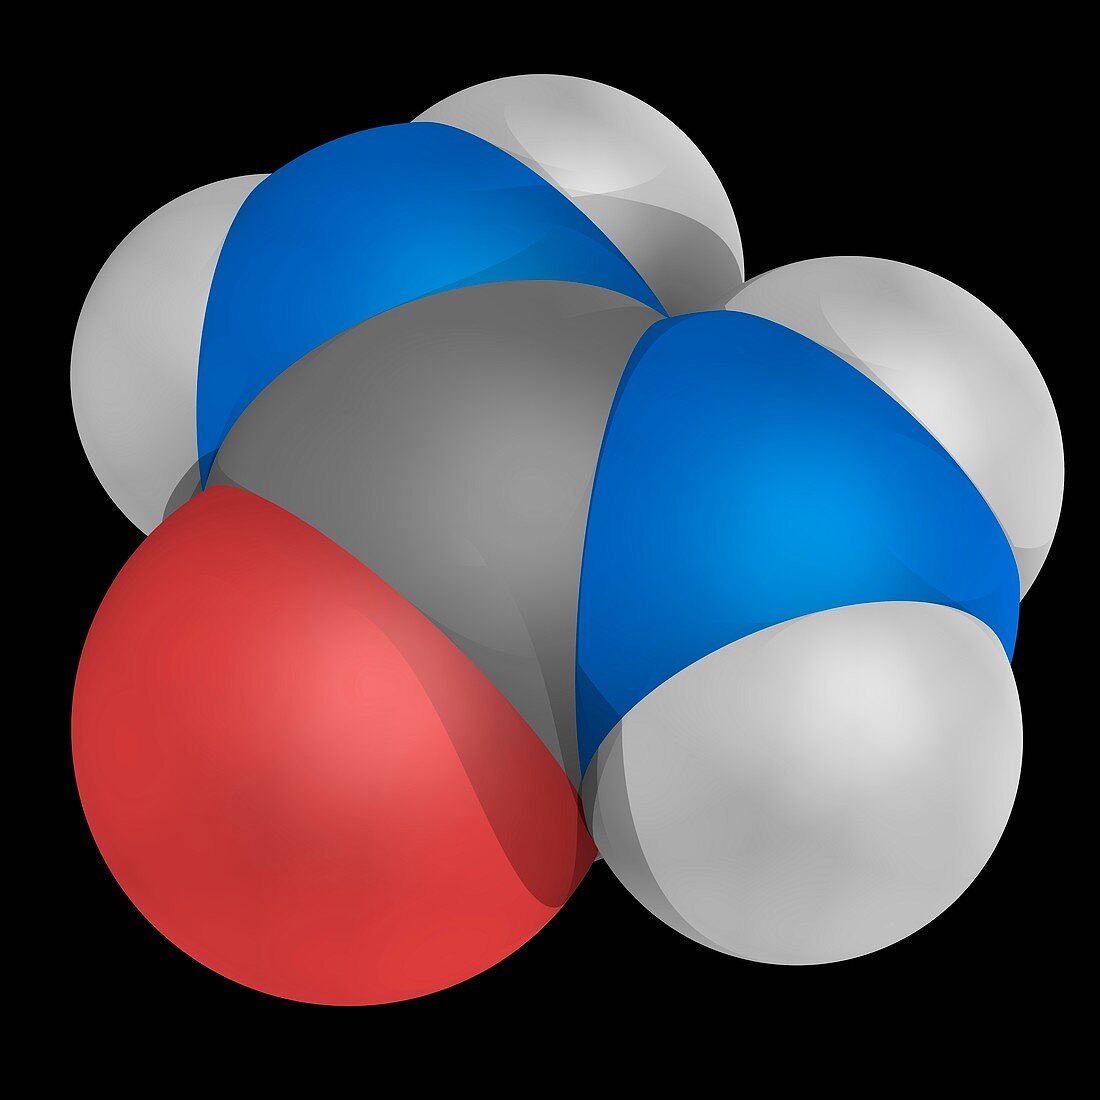 Urea molecule